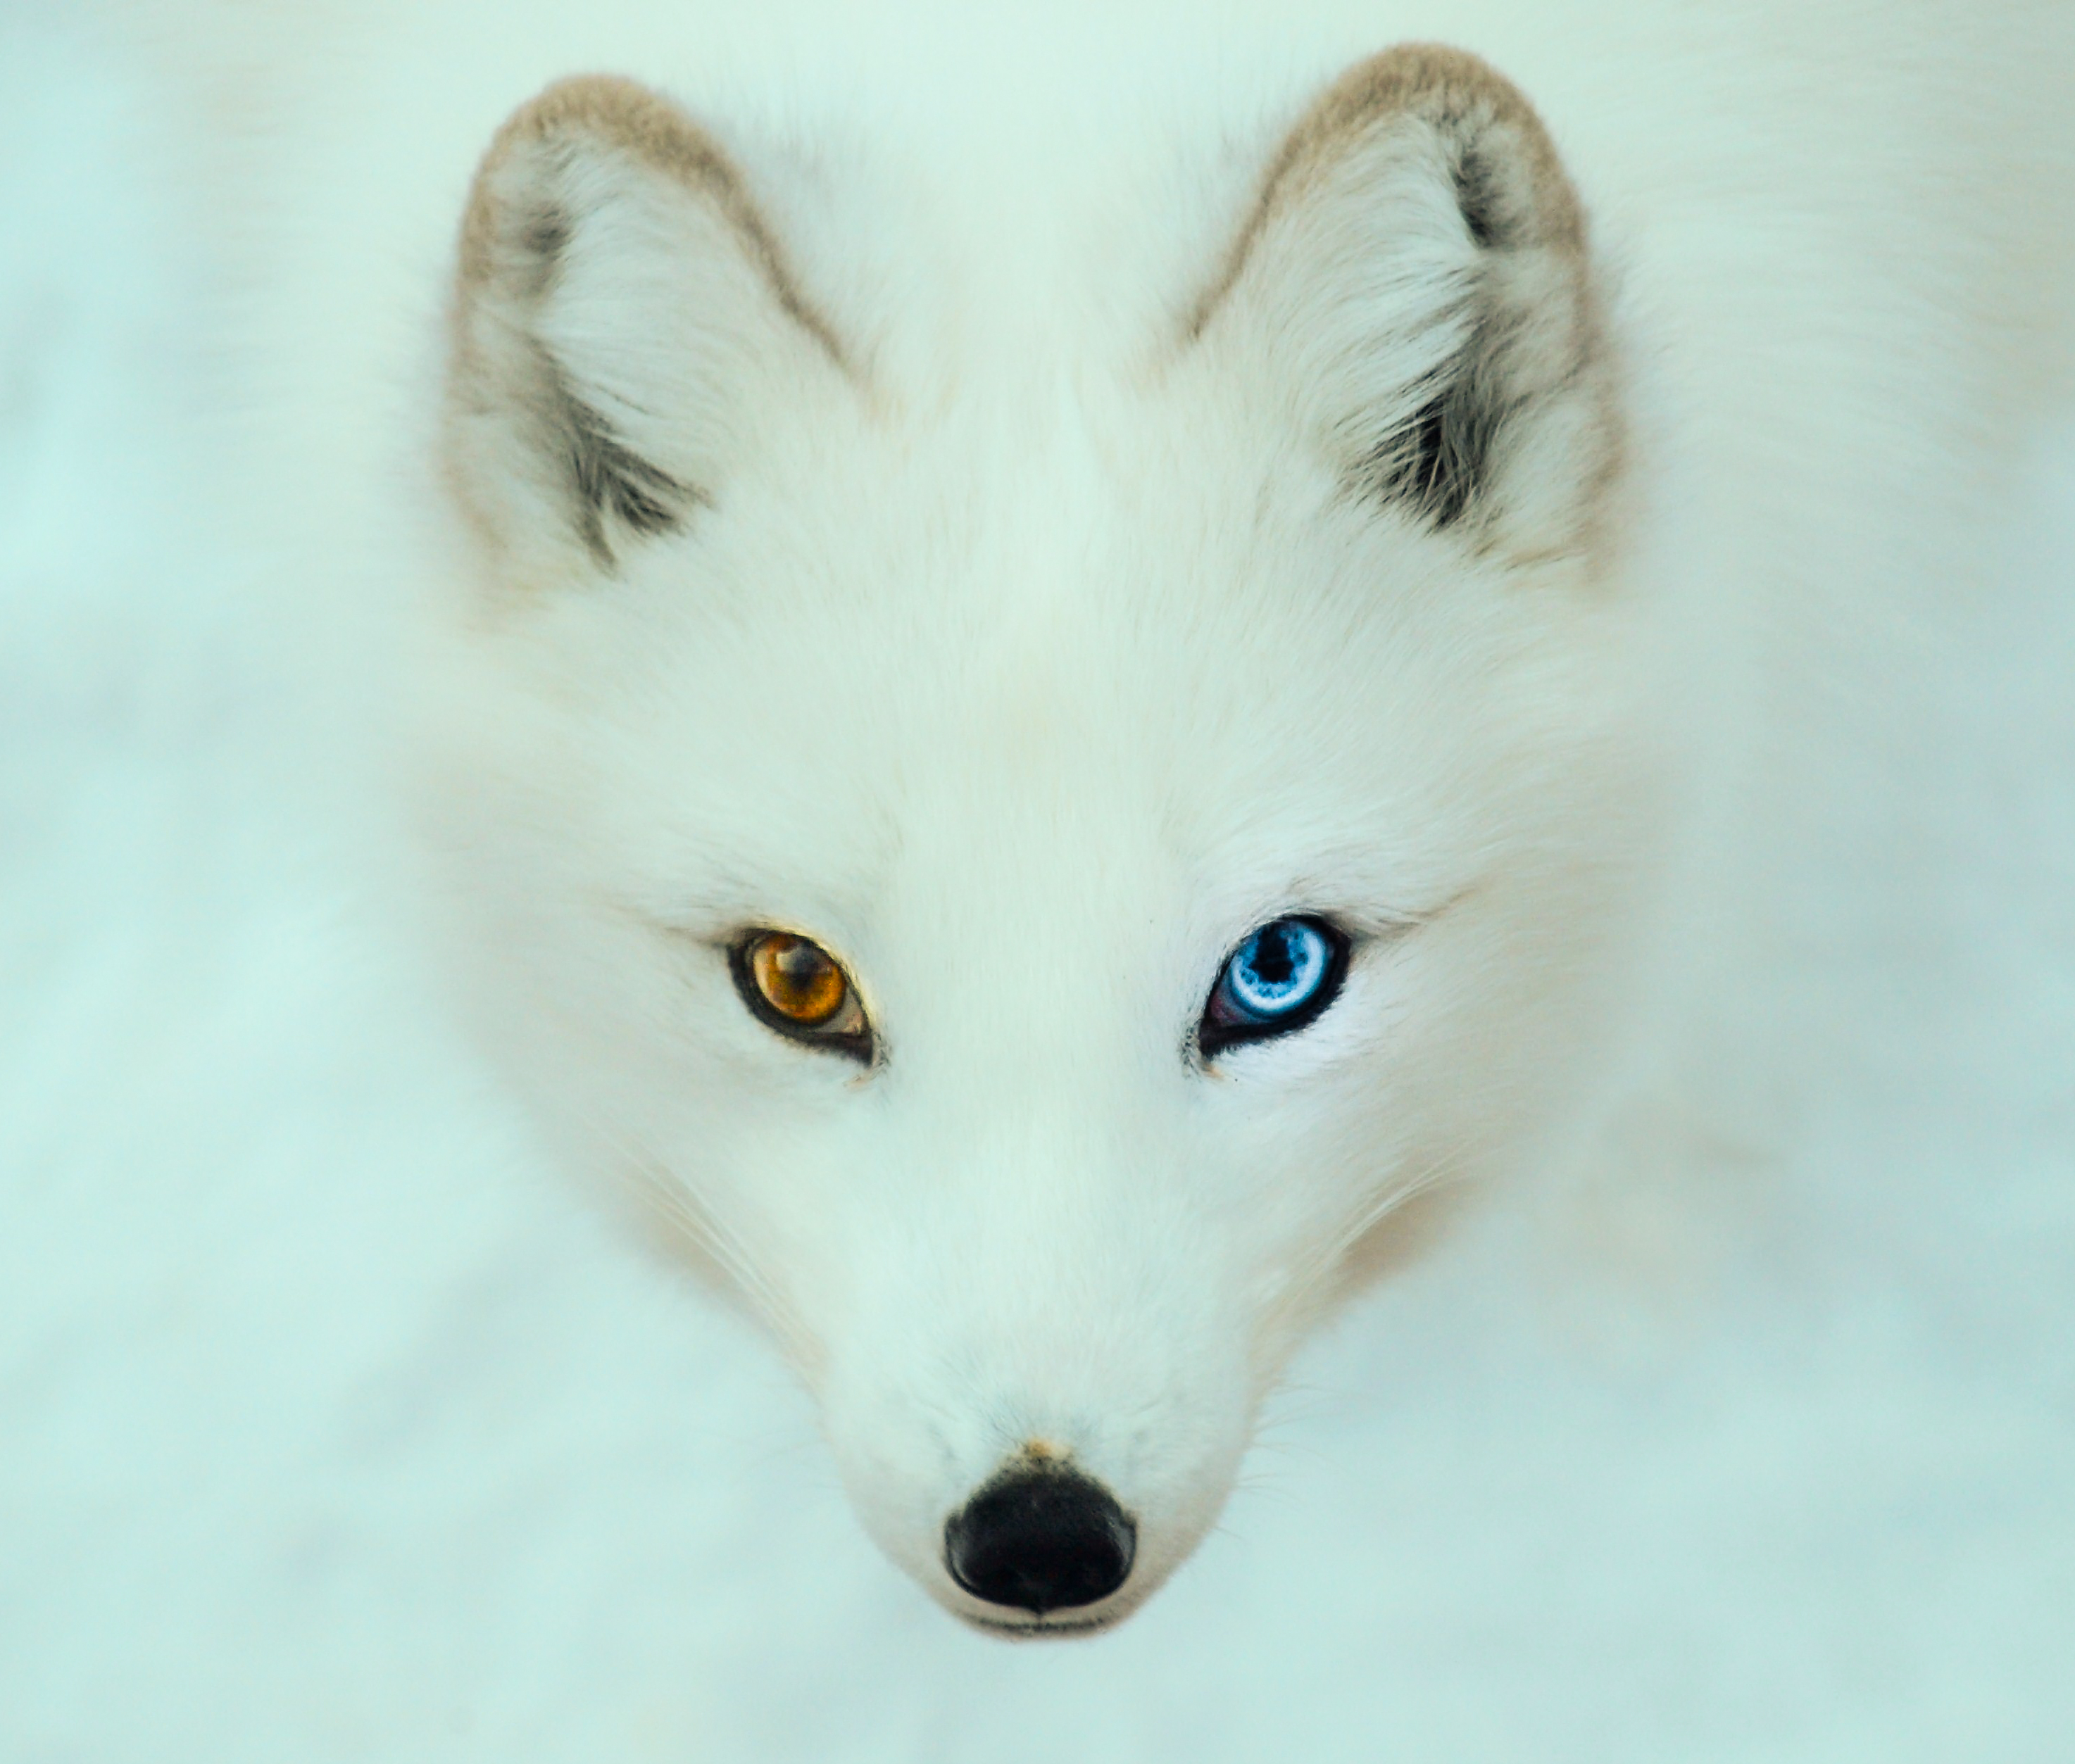 arctc fox